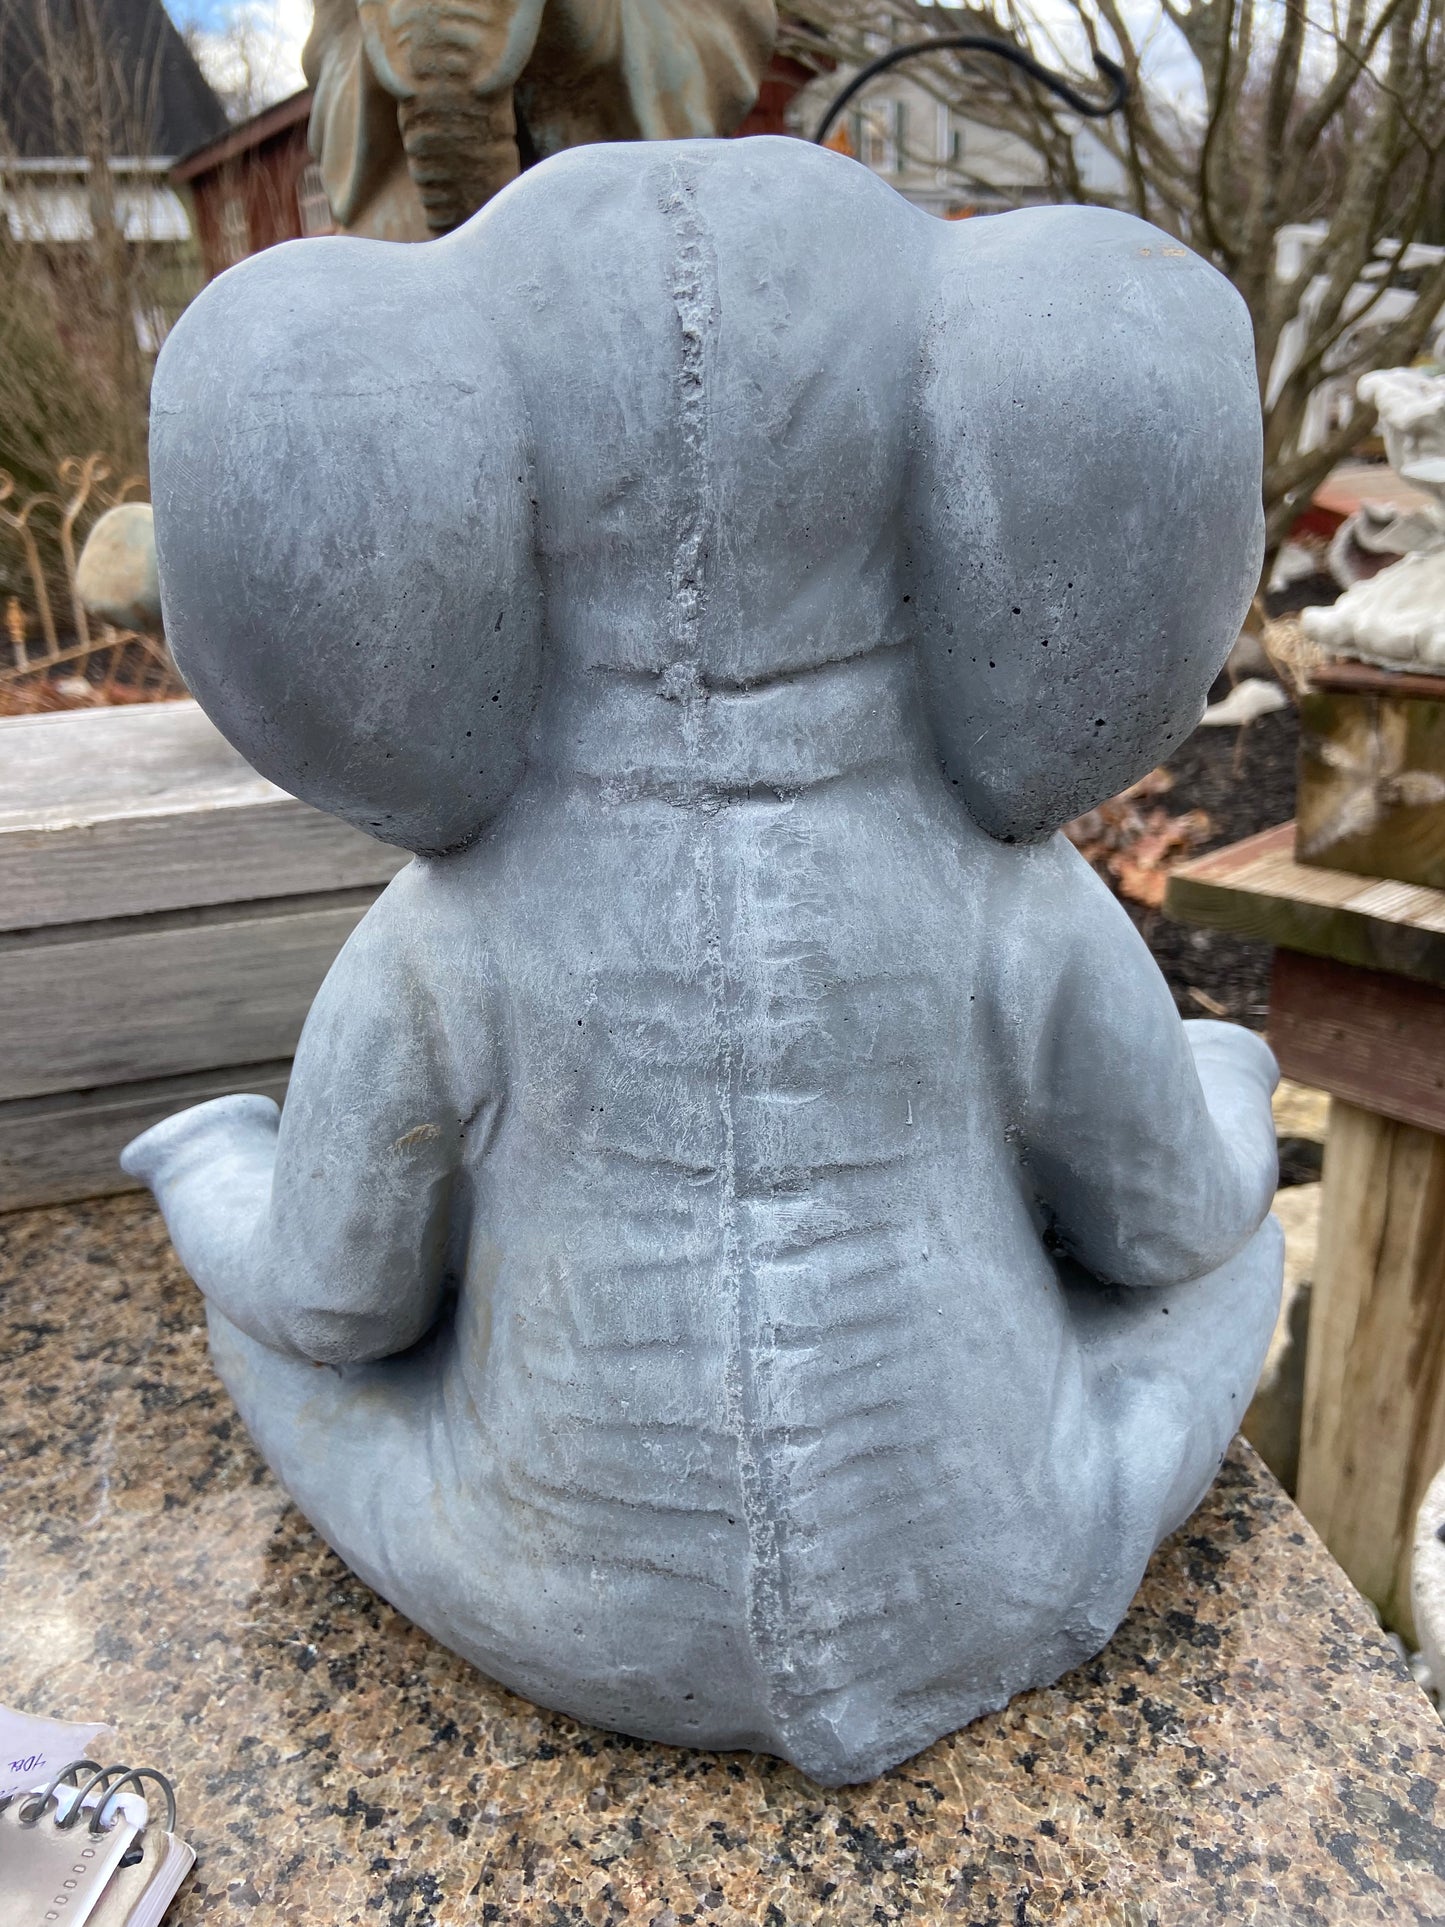 Zen Elephant